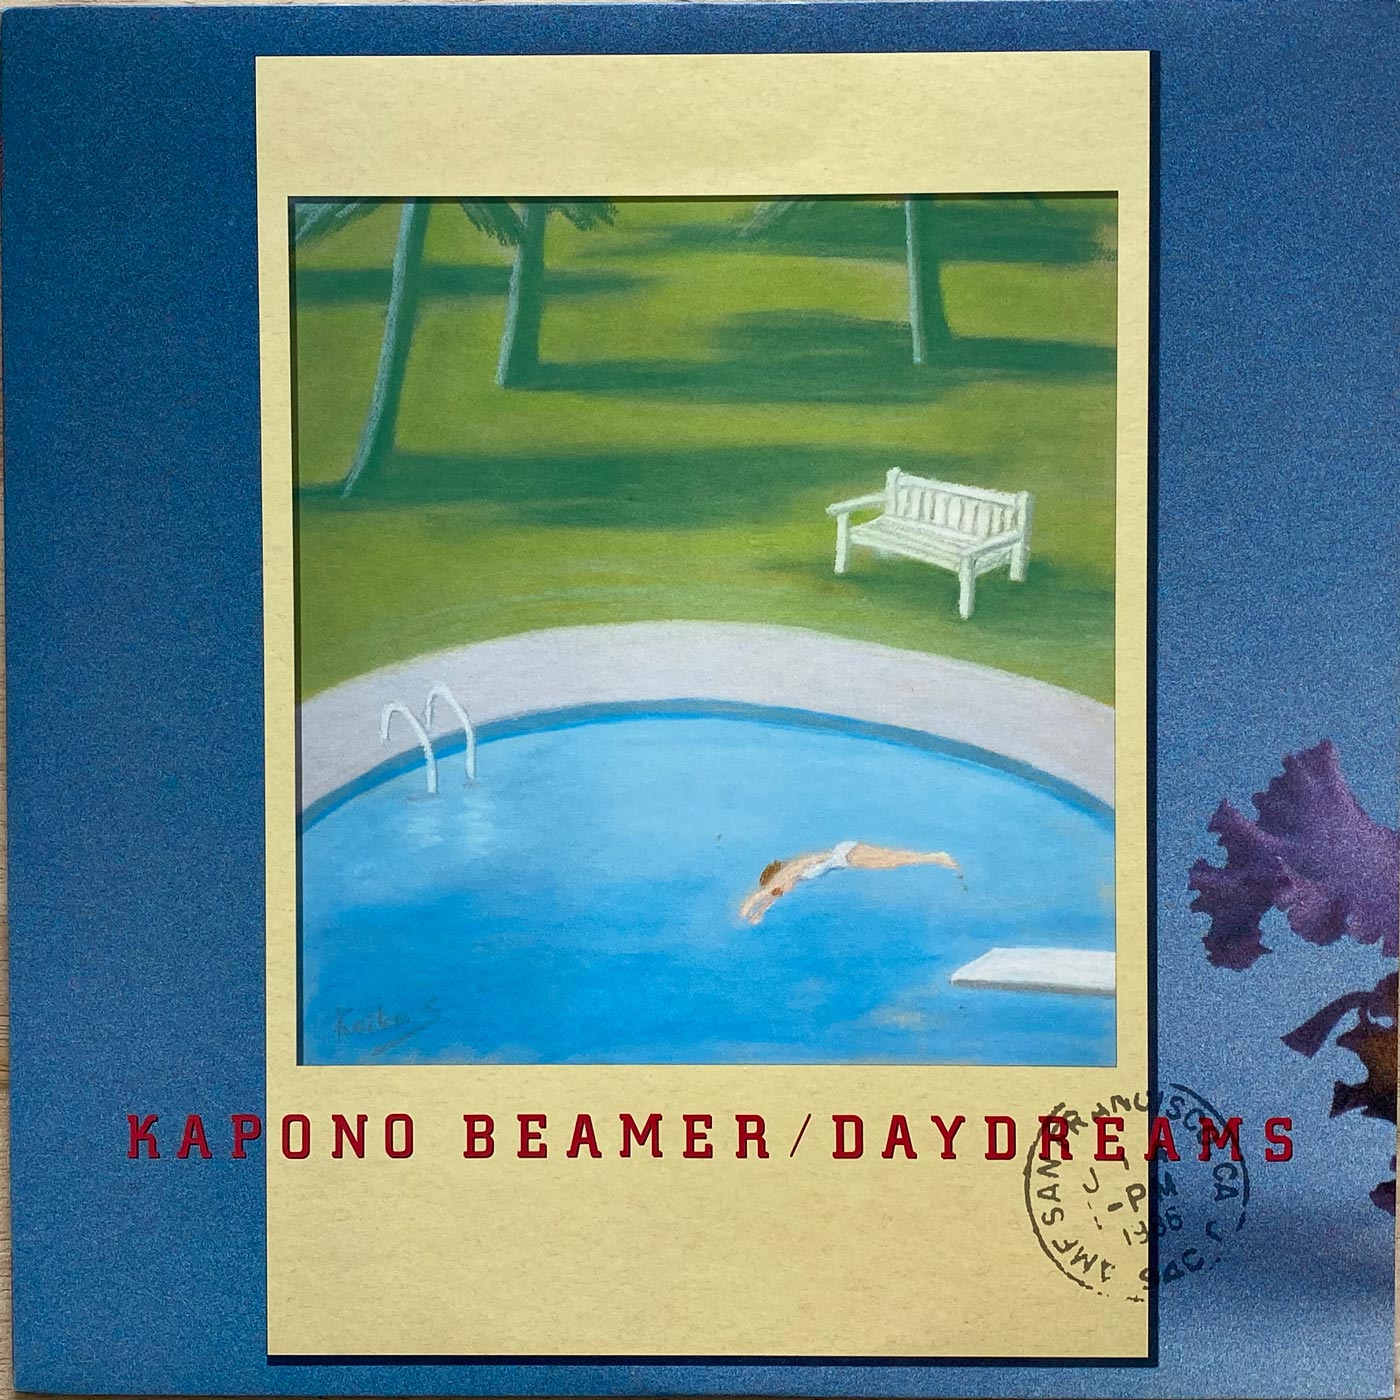 Kapono Beamer - Daydreams